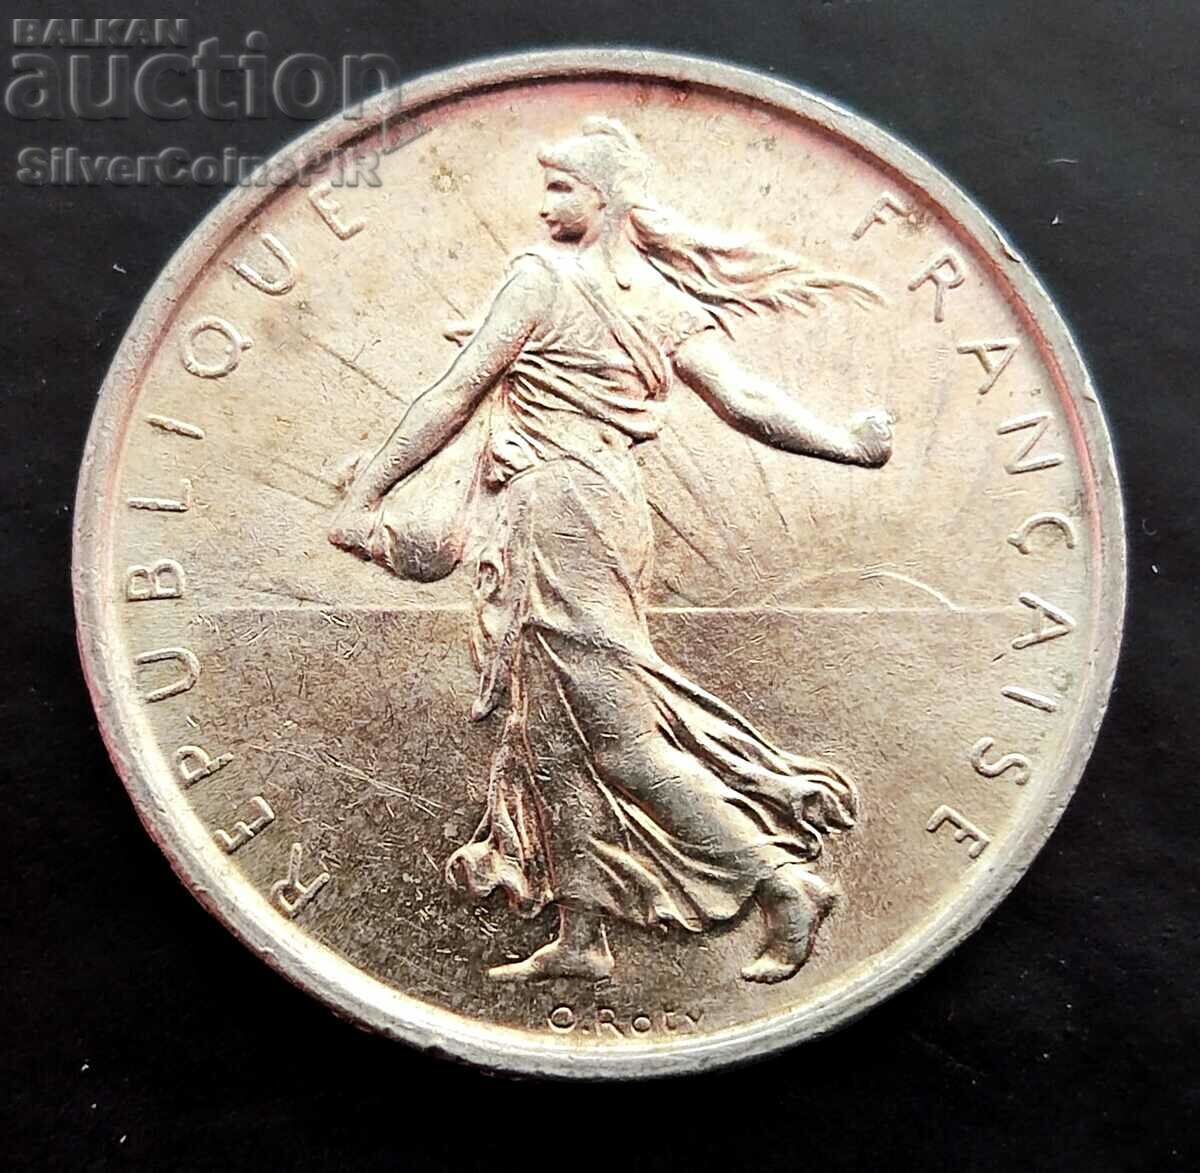 Silver 5 Francs 1964 France